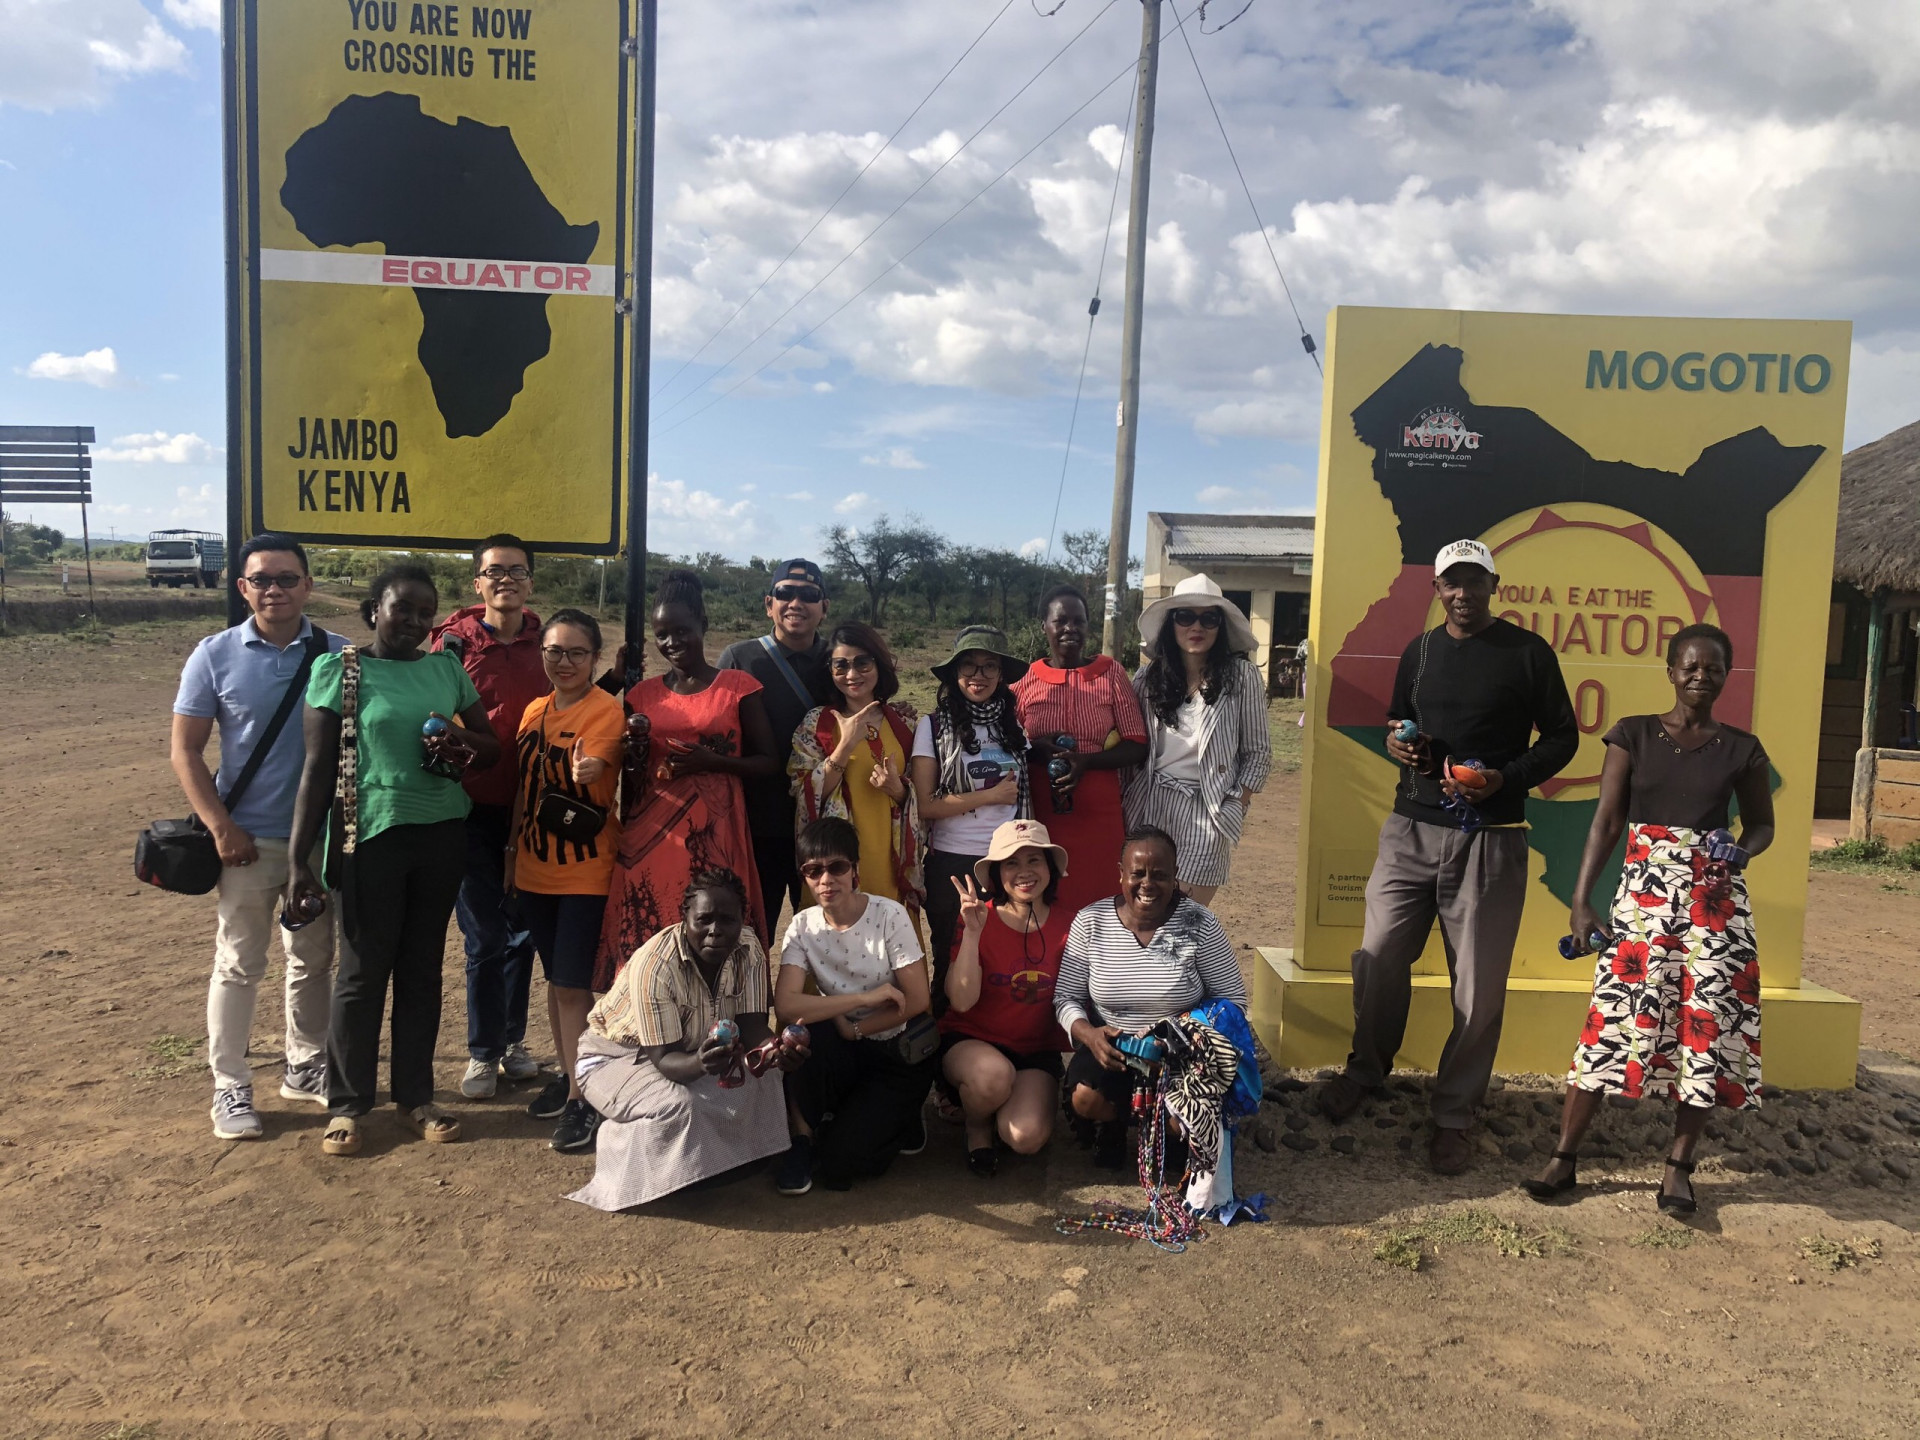 Đoàn chụp ảnh lưu niệm với người dân bản địa tại cột mốc đường xích đạo ở Mogotio